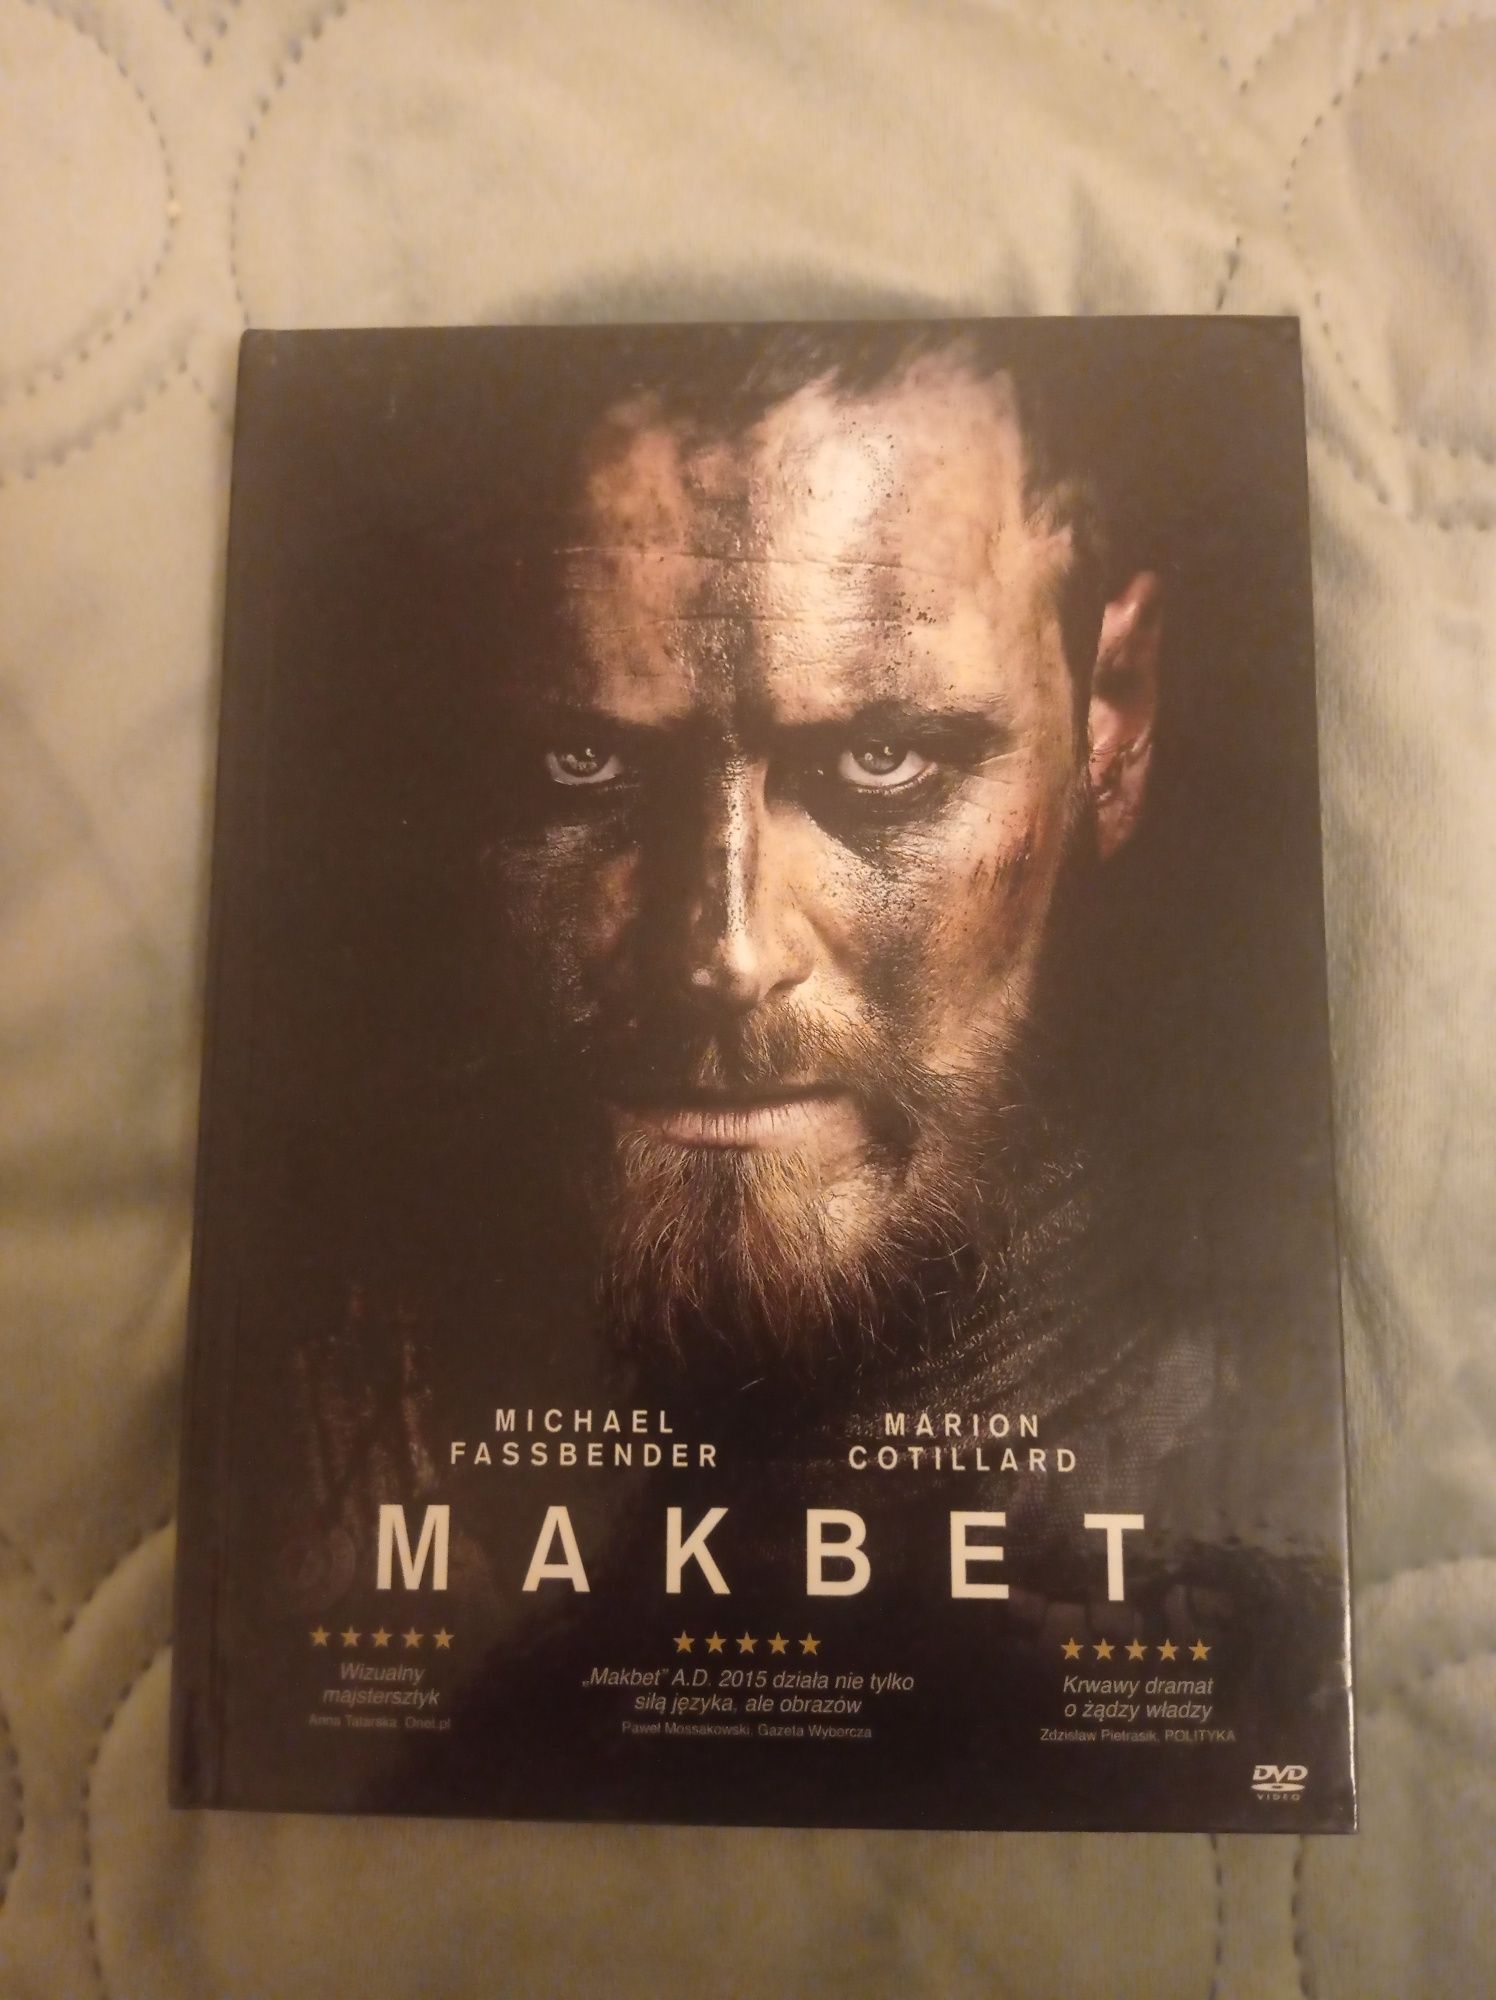 Film DVD "Makbet"